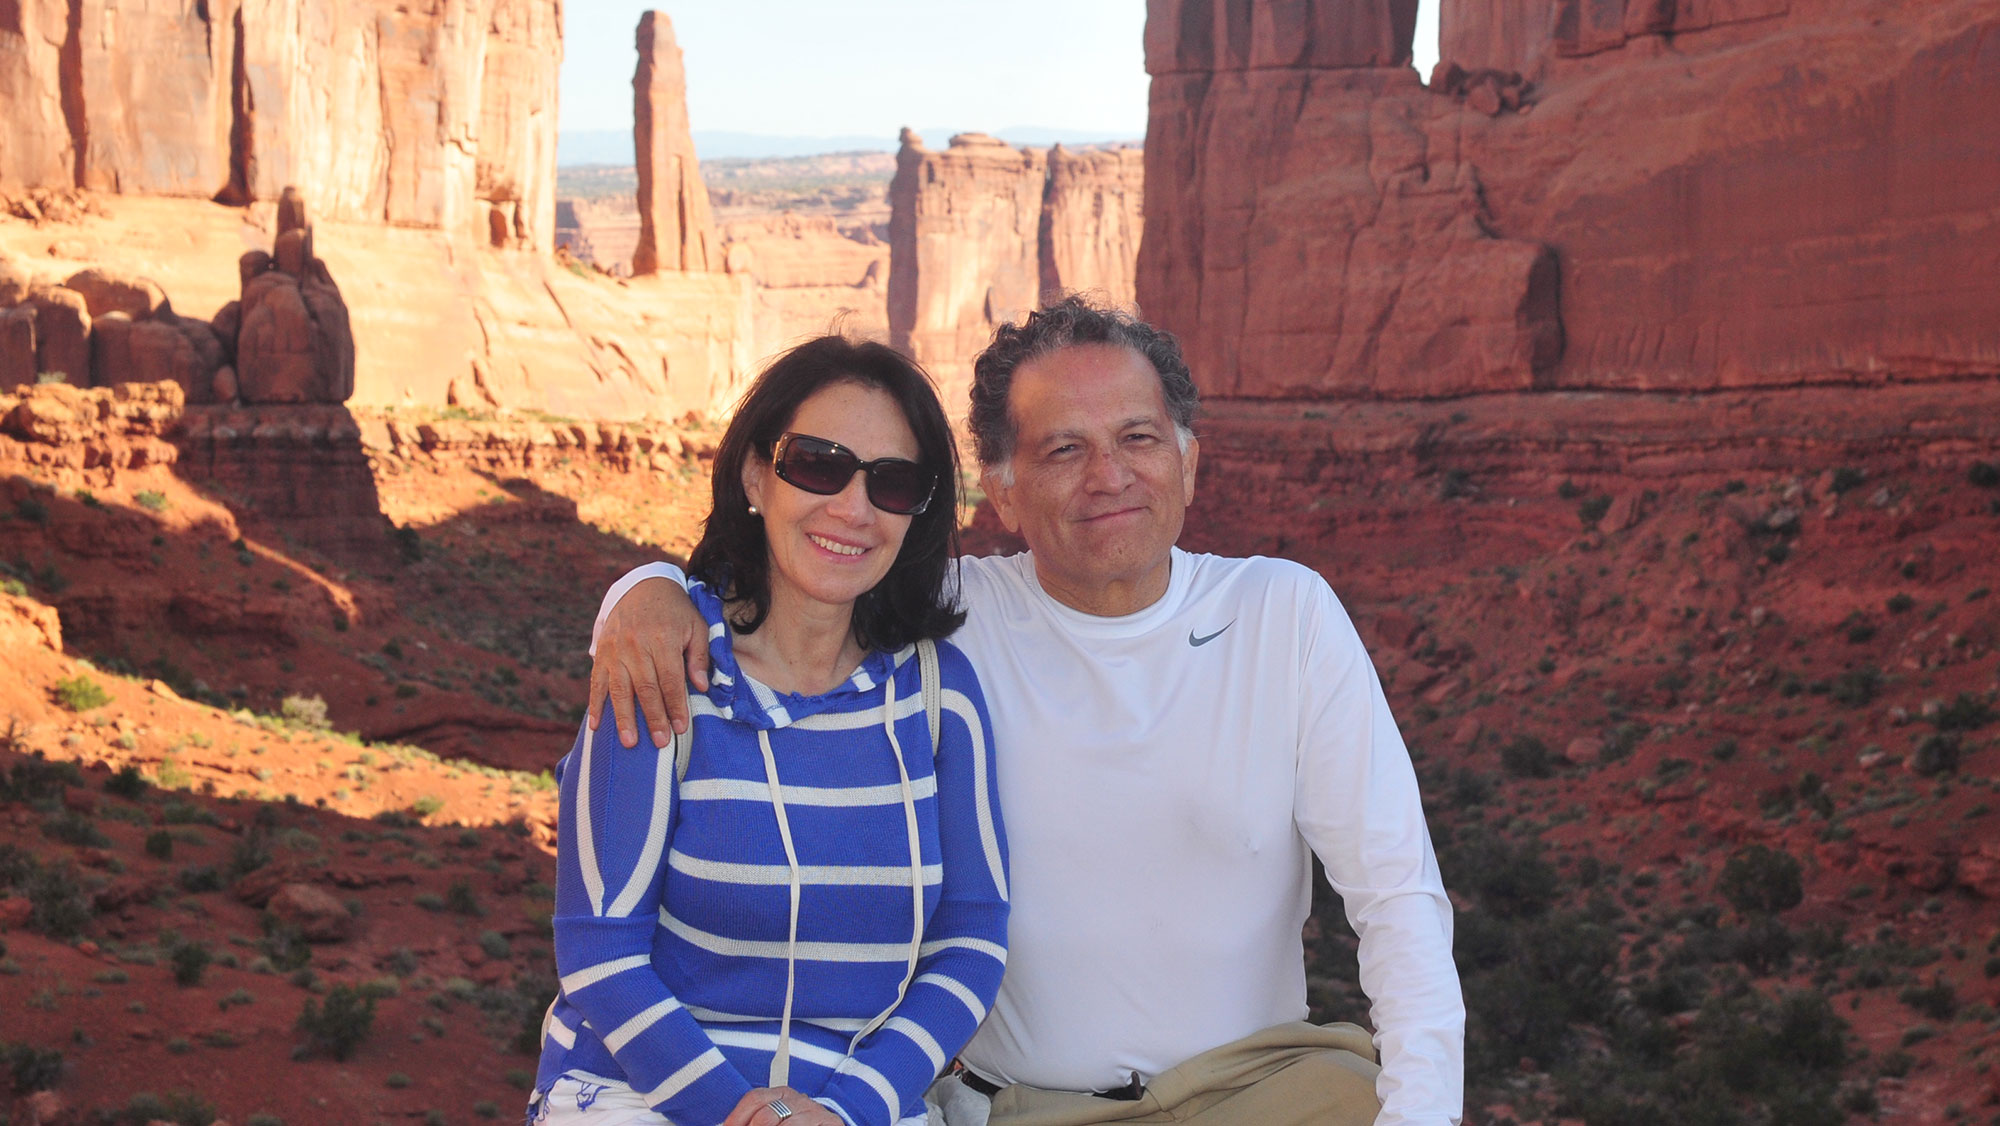 Dr. Edgar Sanchez-Sinencio and wife Yolanda pose in front of a canyon